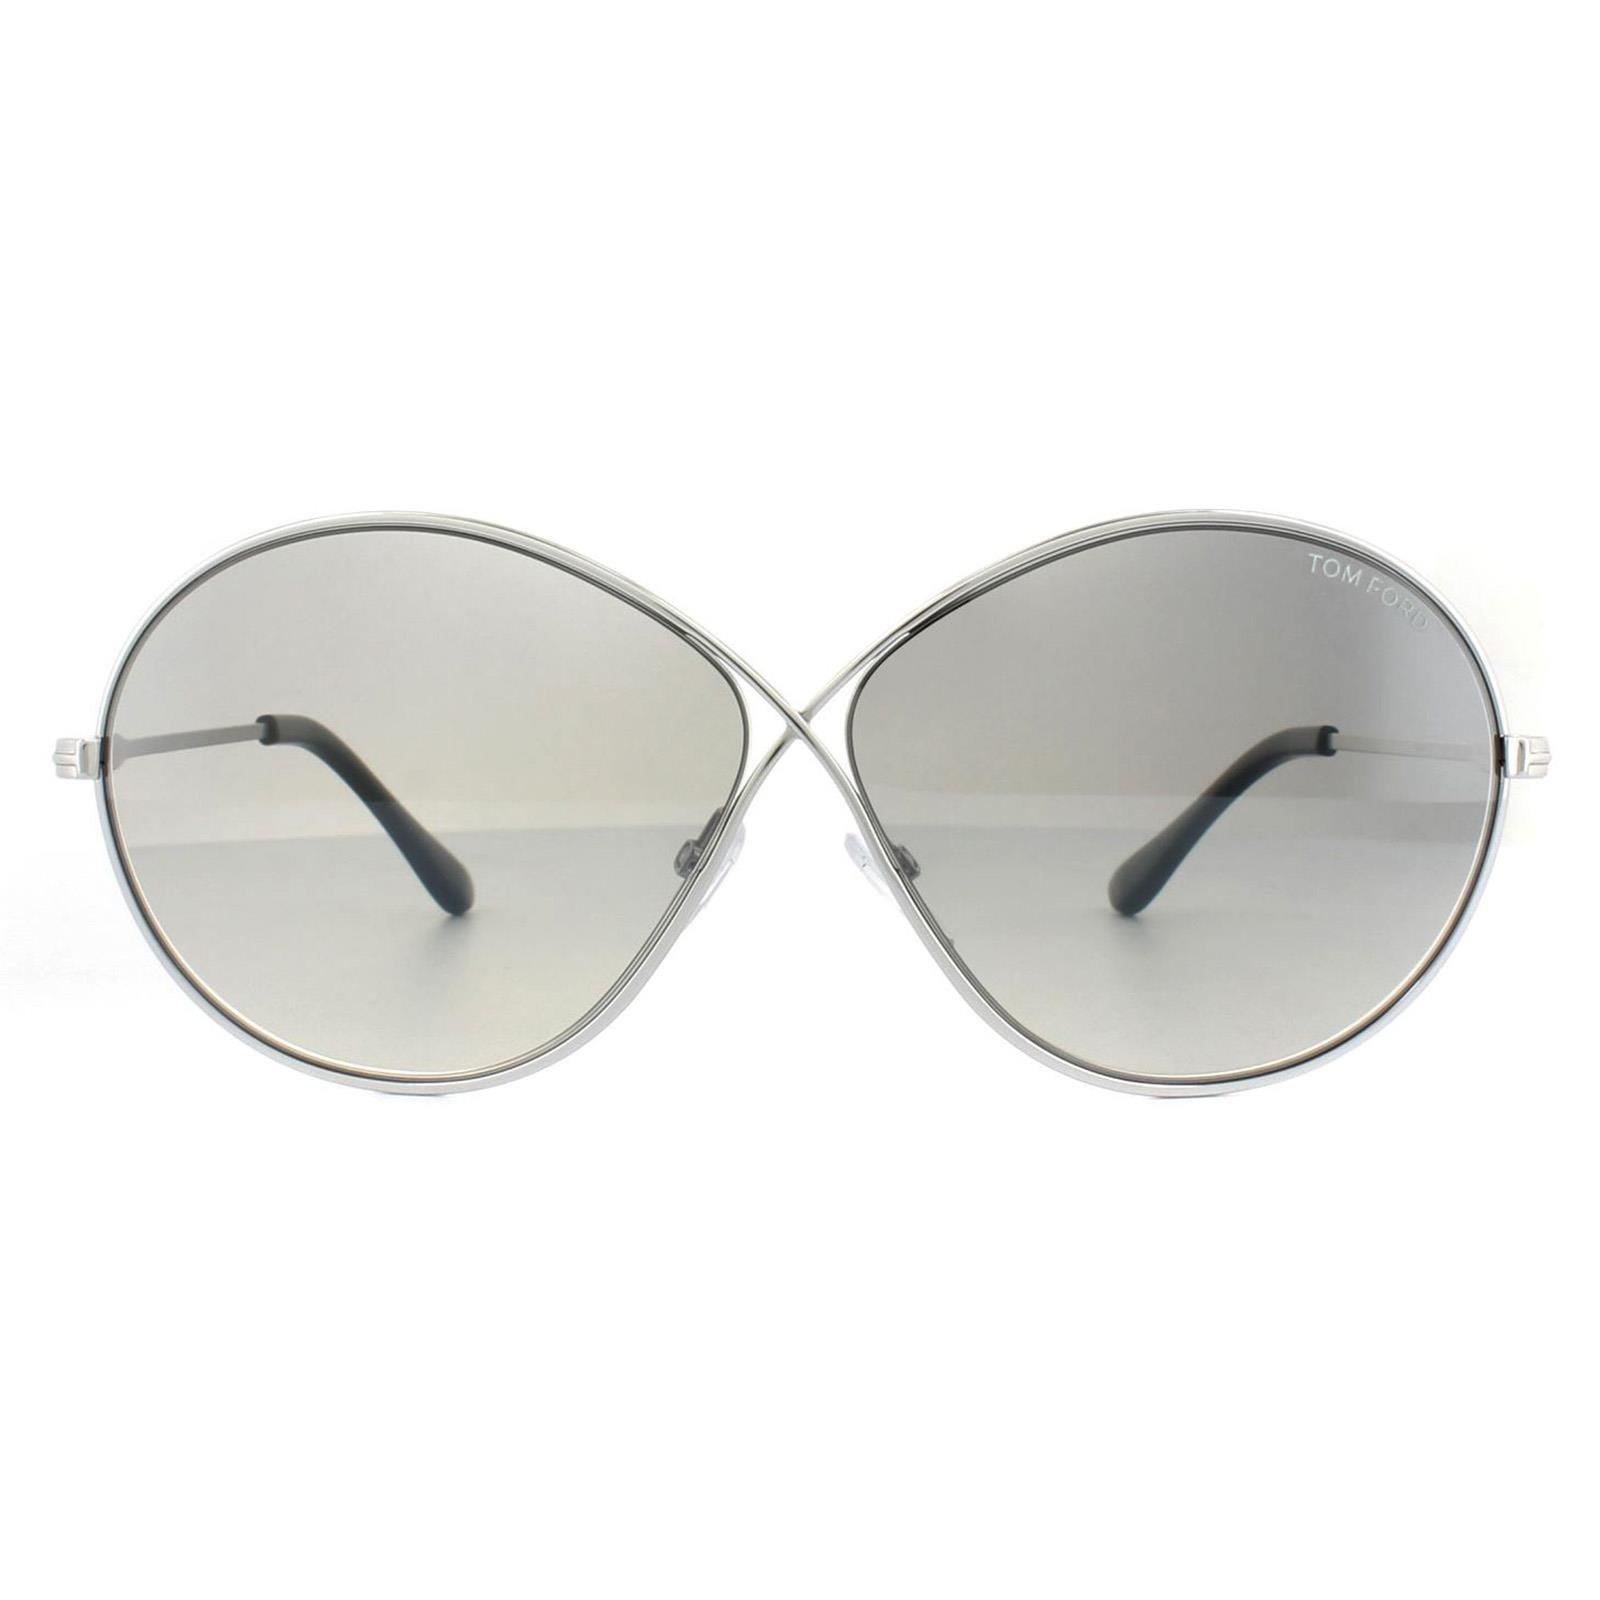 Овальные зеркальные солнцезащитные очки с блестящим родием дымчато-серого цвета Tom Ford, серебро